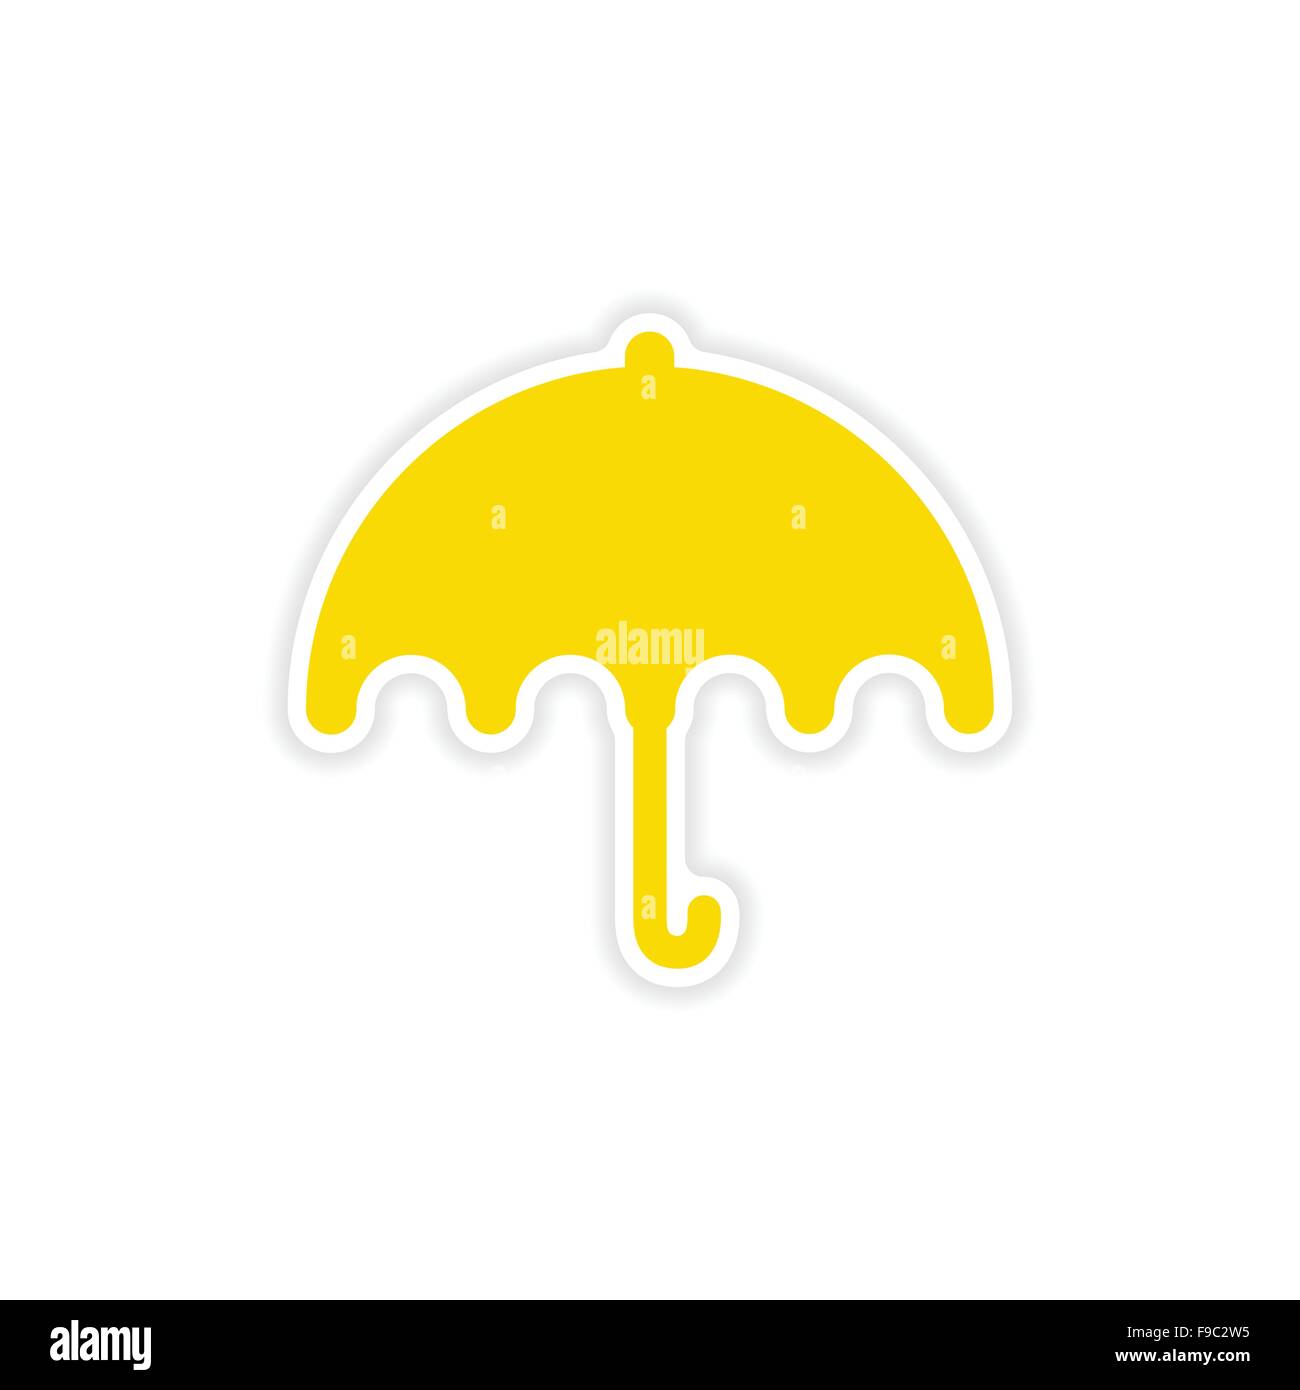 icon sticker realistic design on paper umbrella Stock Vector